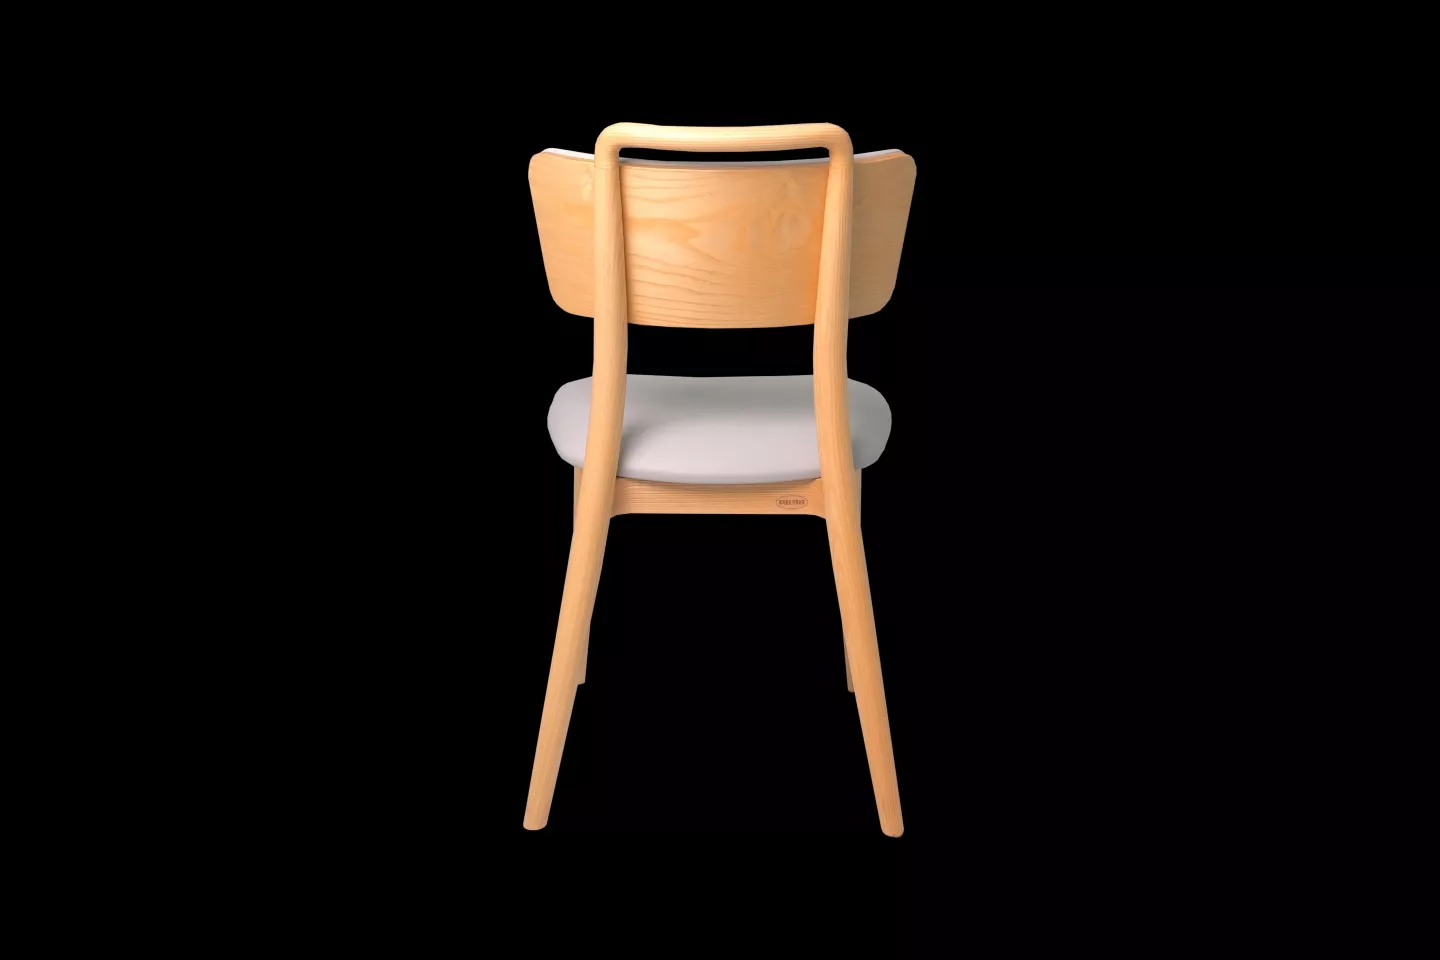 訂製餐椅實際拍攝背面照片,精緻台灣工藝製程的精品餐椅